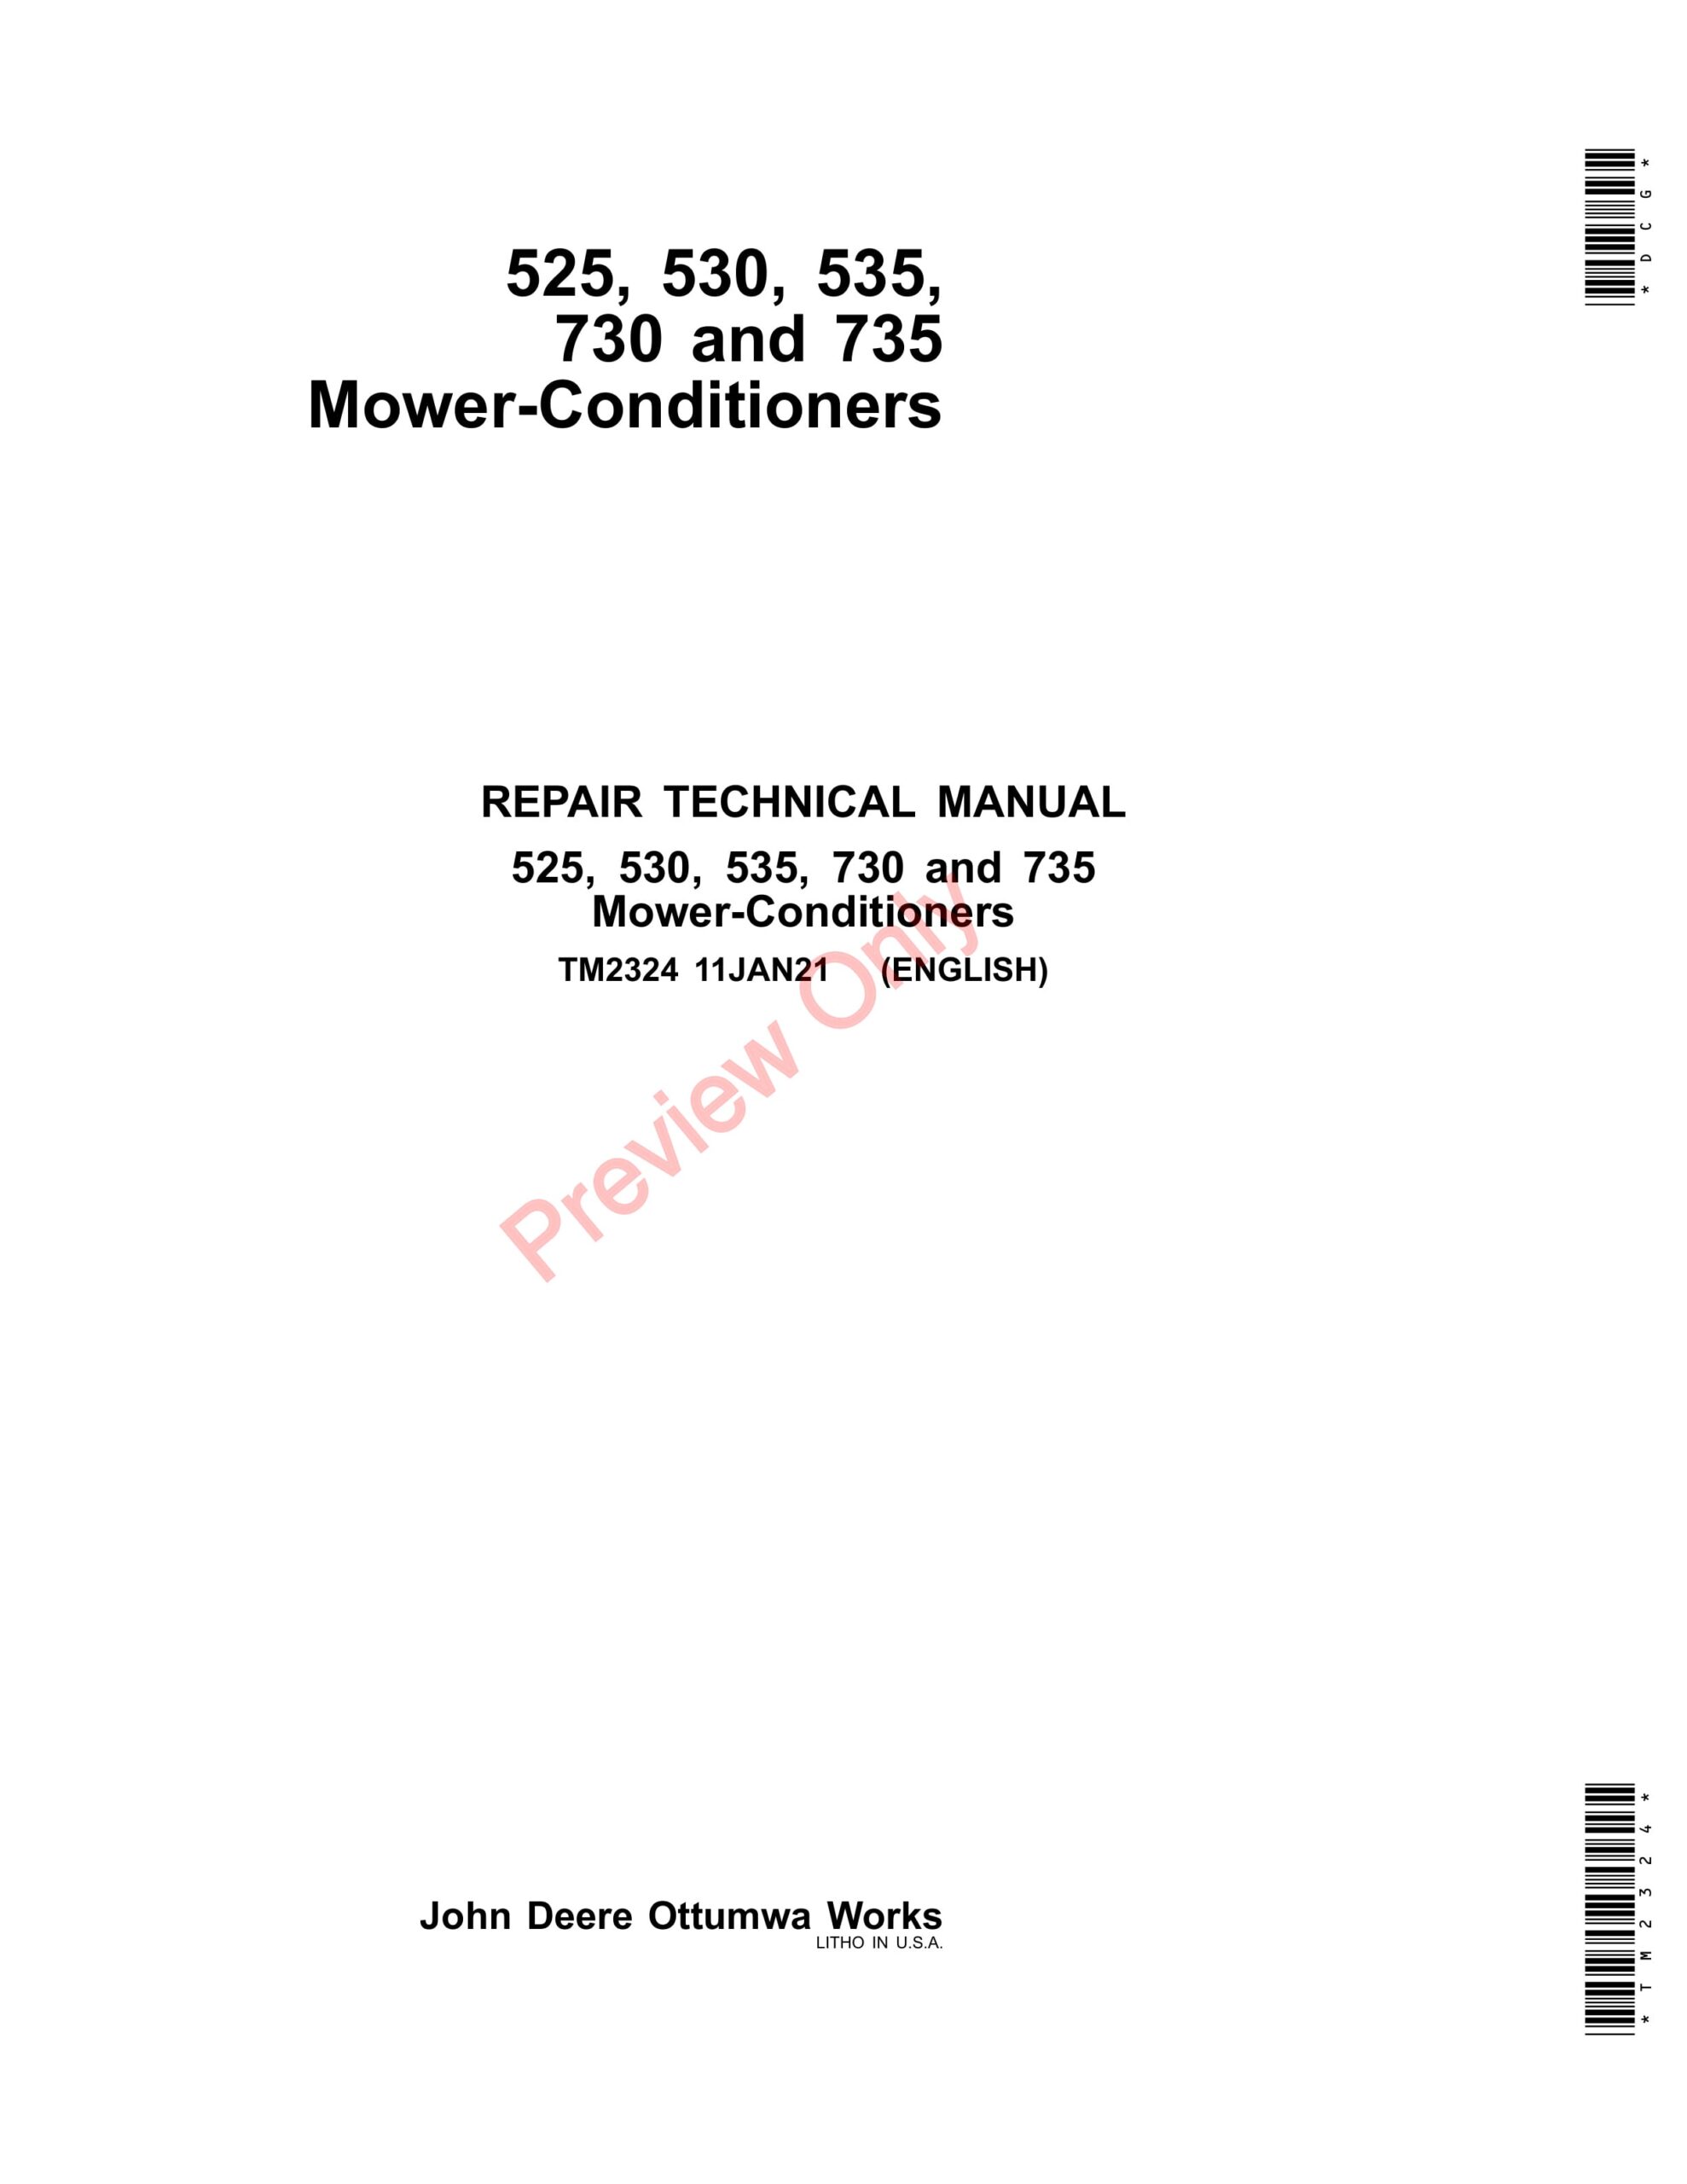 John Deere 525, 530, 535, 730 and 735 Mower-Conditioners Repair Technical Manual TM2324 11JAN21-1